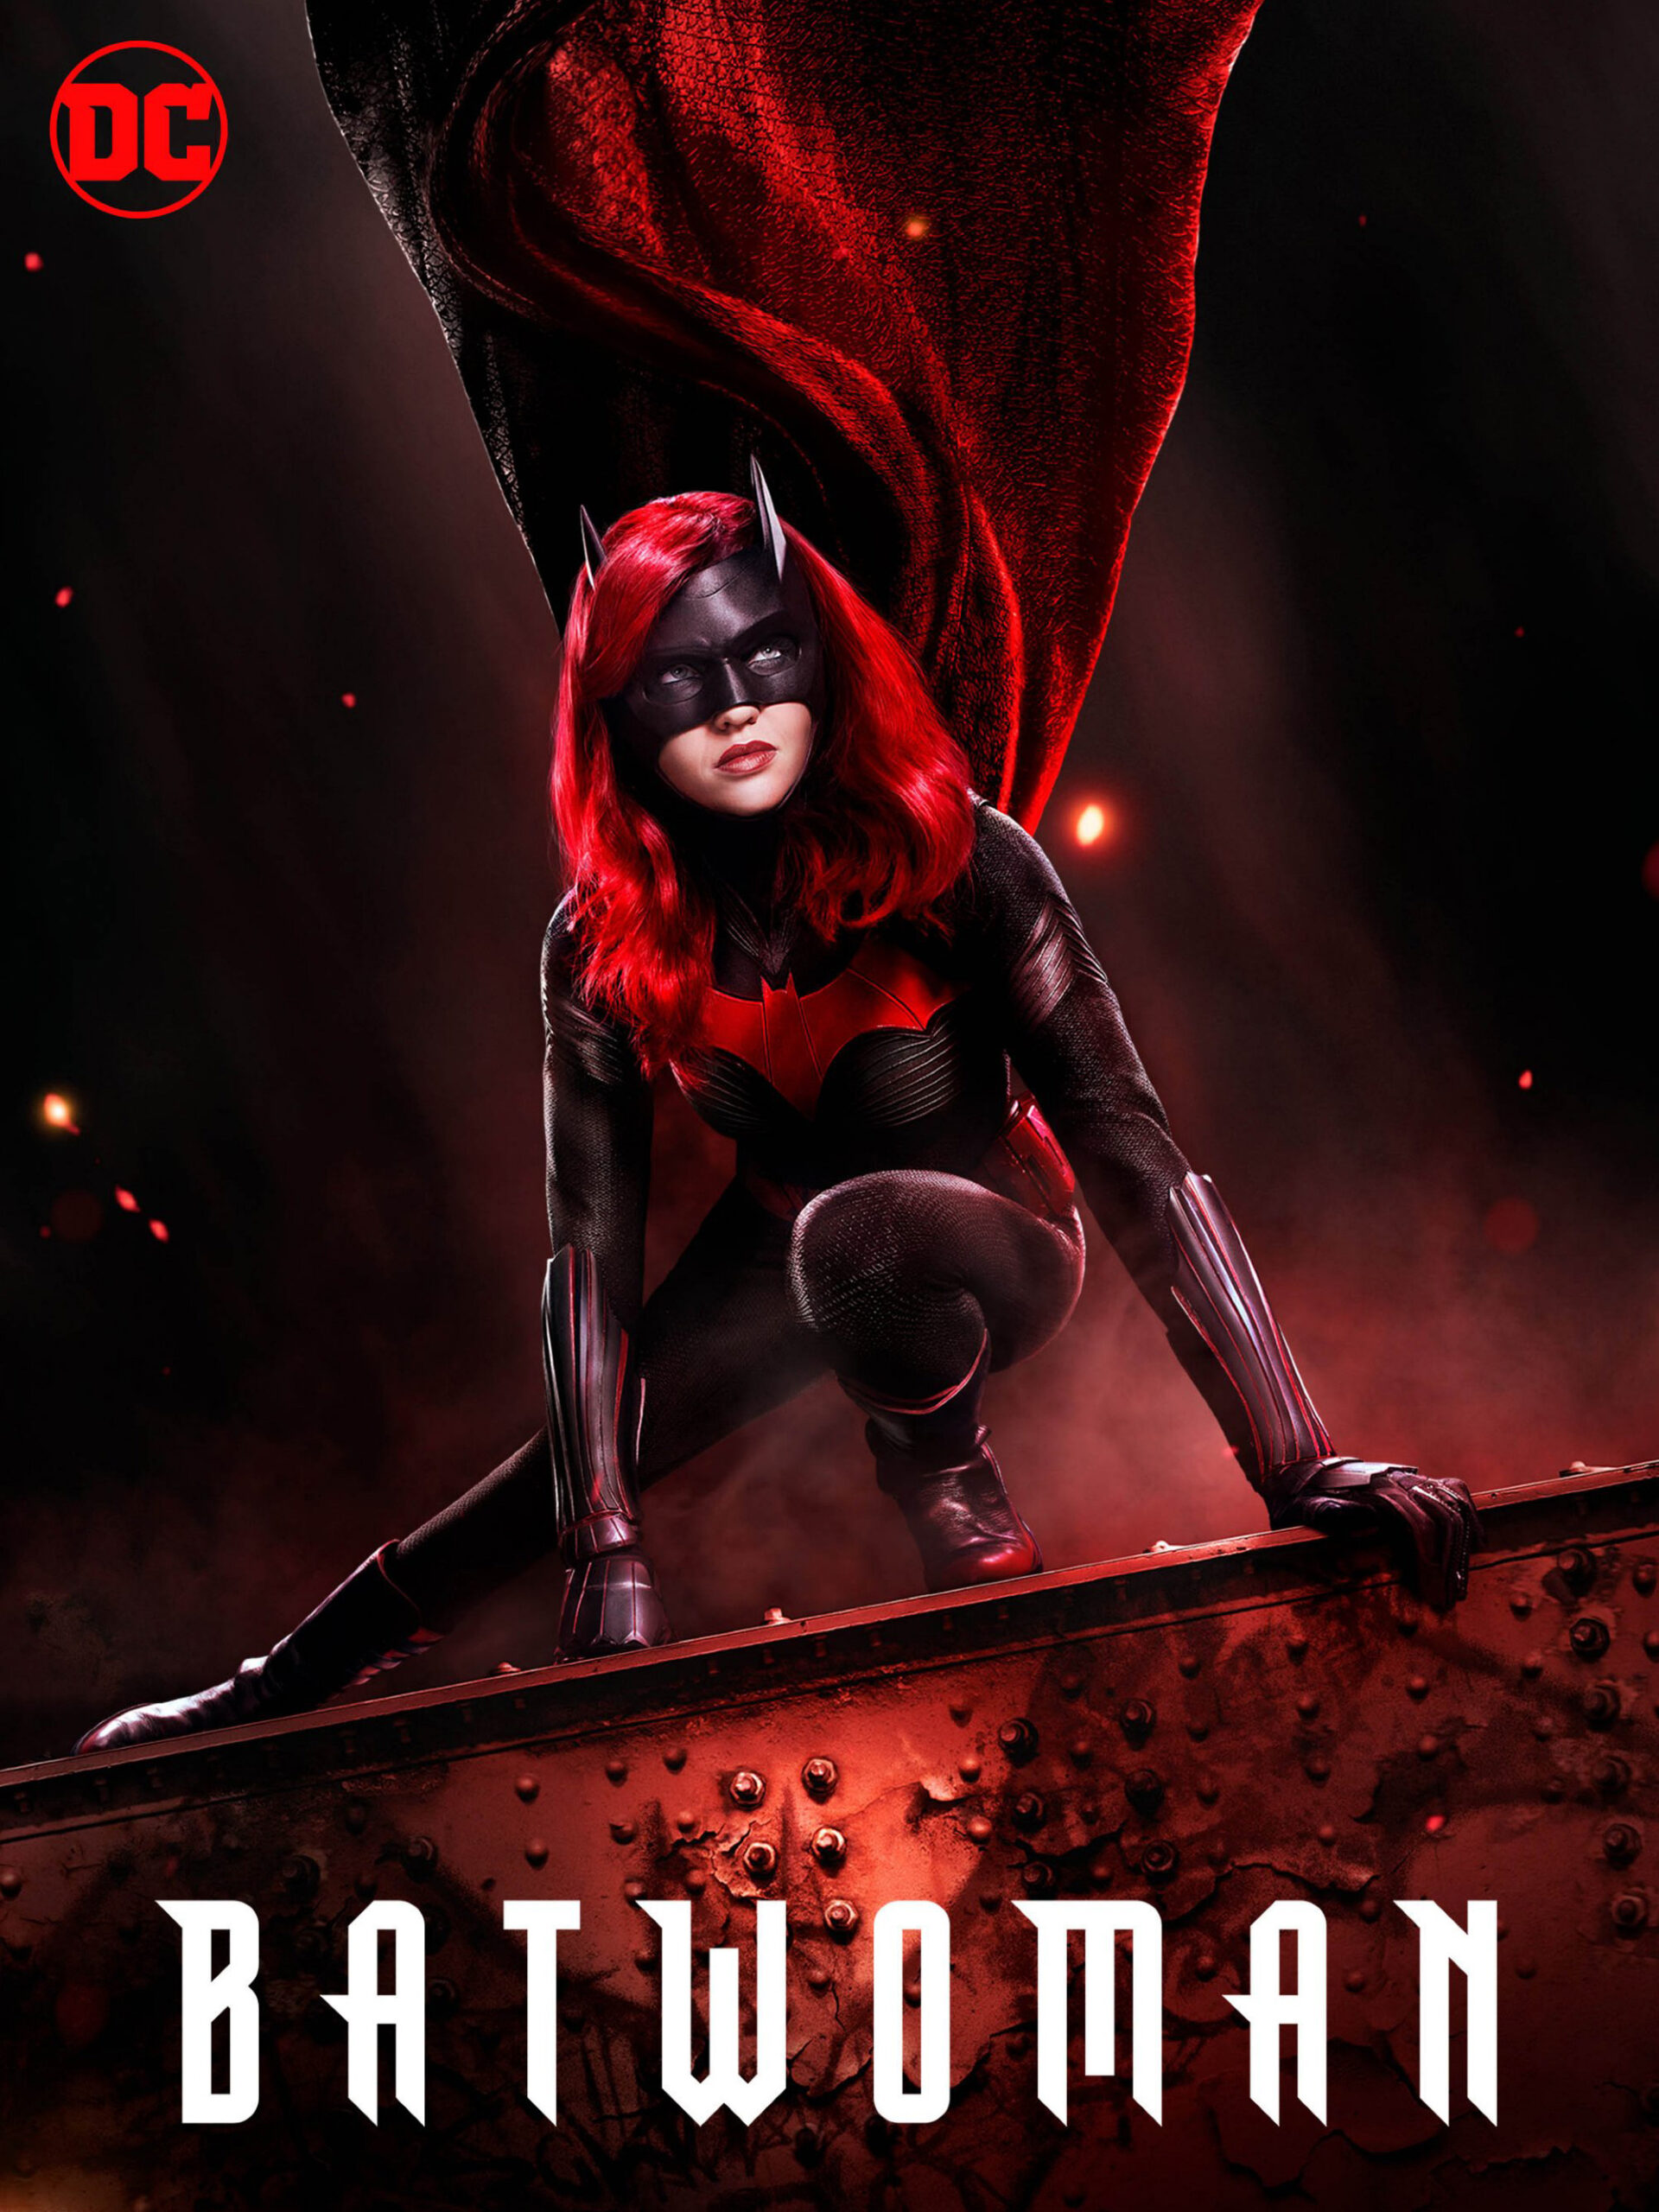 ดูหนังออนไลน์ฟรี Batwoman Season 1 (2019) EP.10 แบทวูแมน ซีซั่น 1 ตอนที่ 10 (Soundtrack)